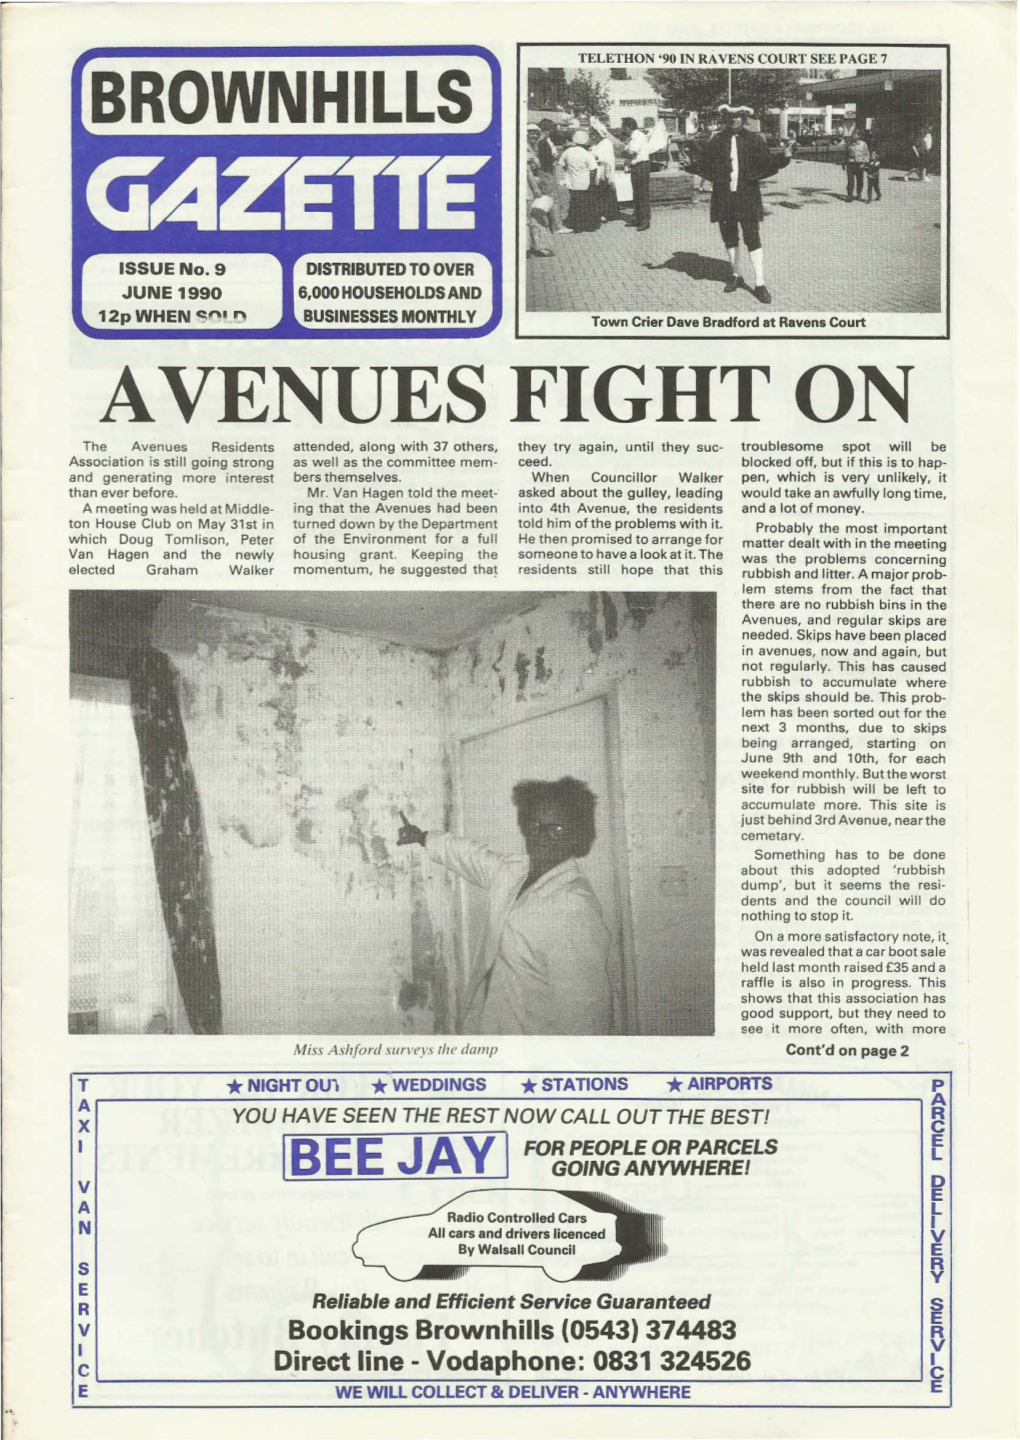 Brownhills Gazette Issue 9 June 1990